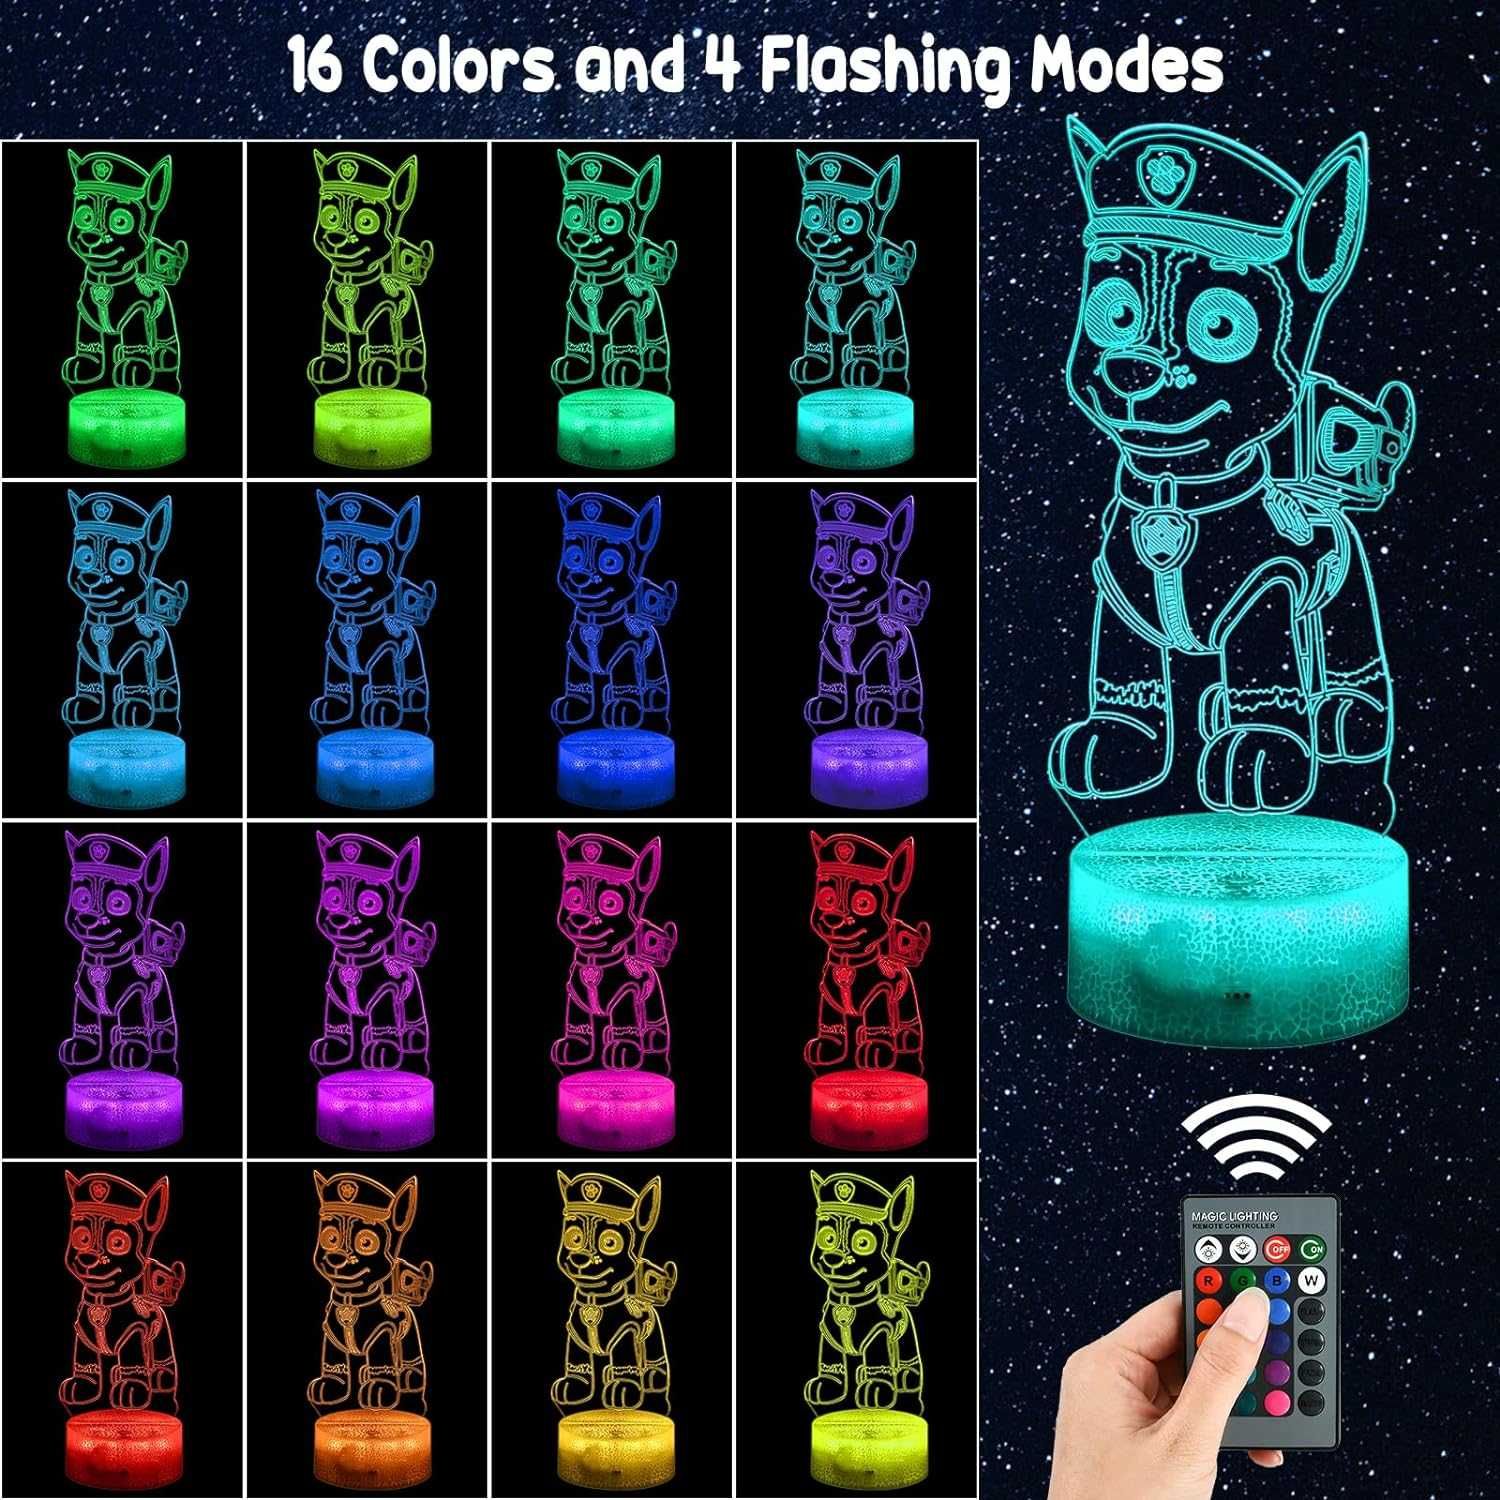 3D LED Paw Patrol илюзионна лампа, 3 плаки, 16 променящи се цвята